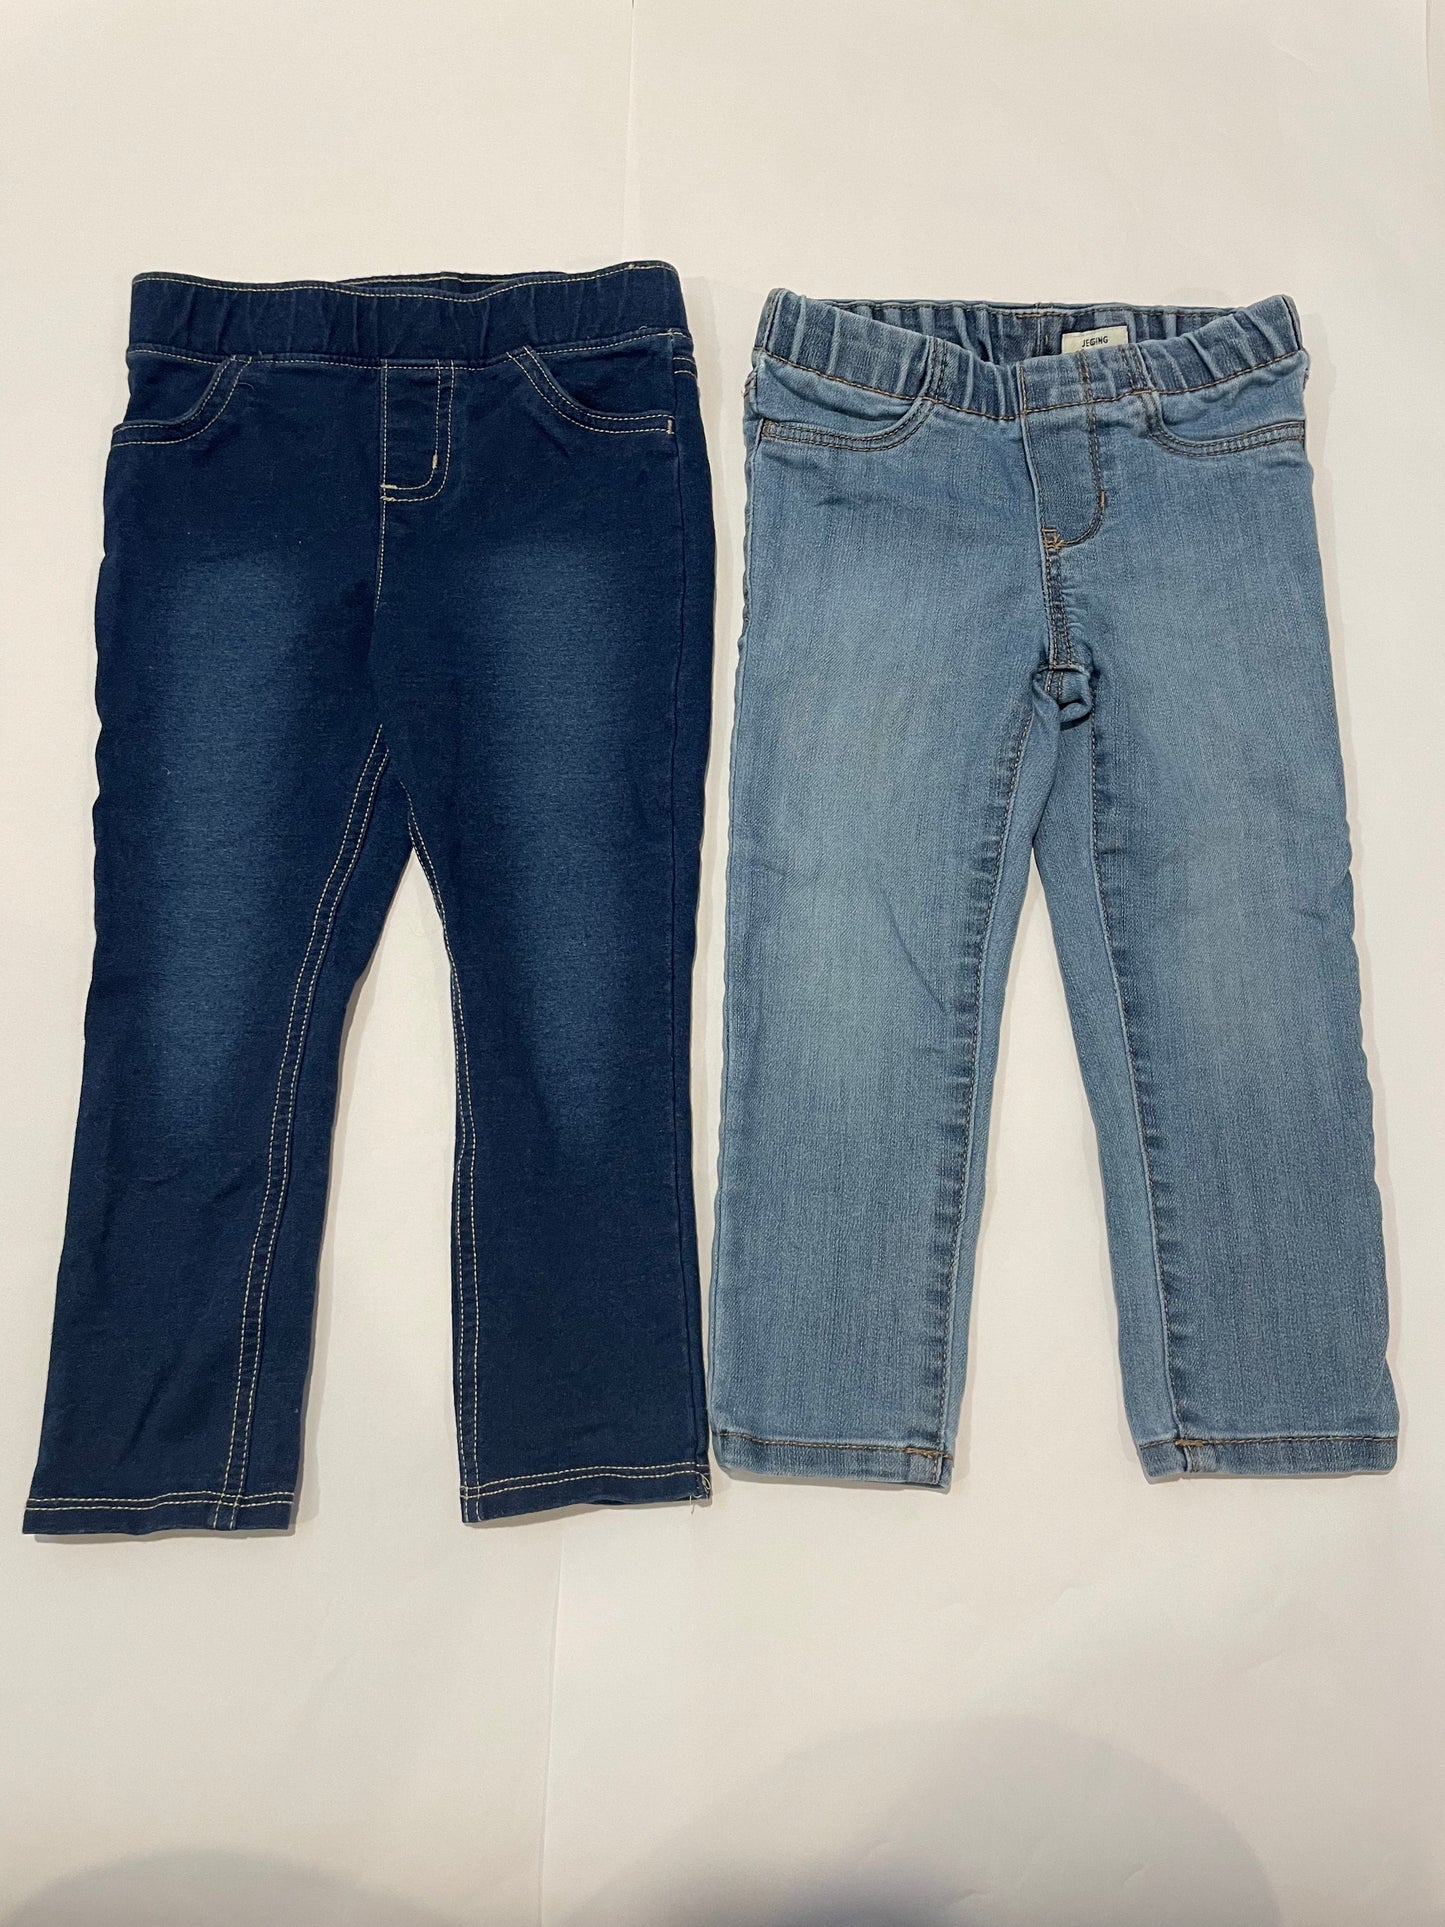 Girls 3T Jeans Bundle 2 Pairs EUC